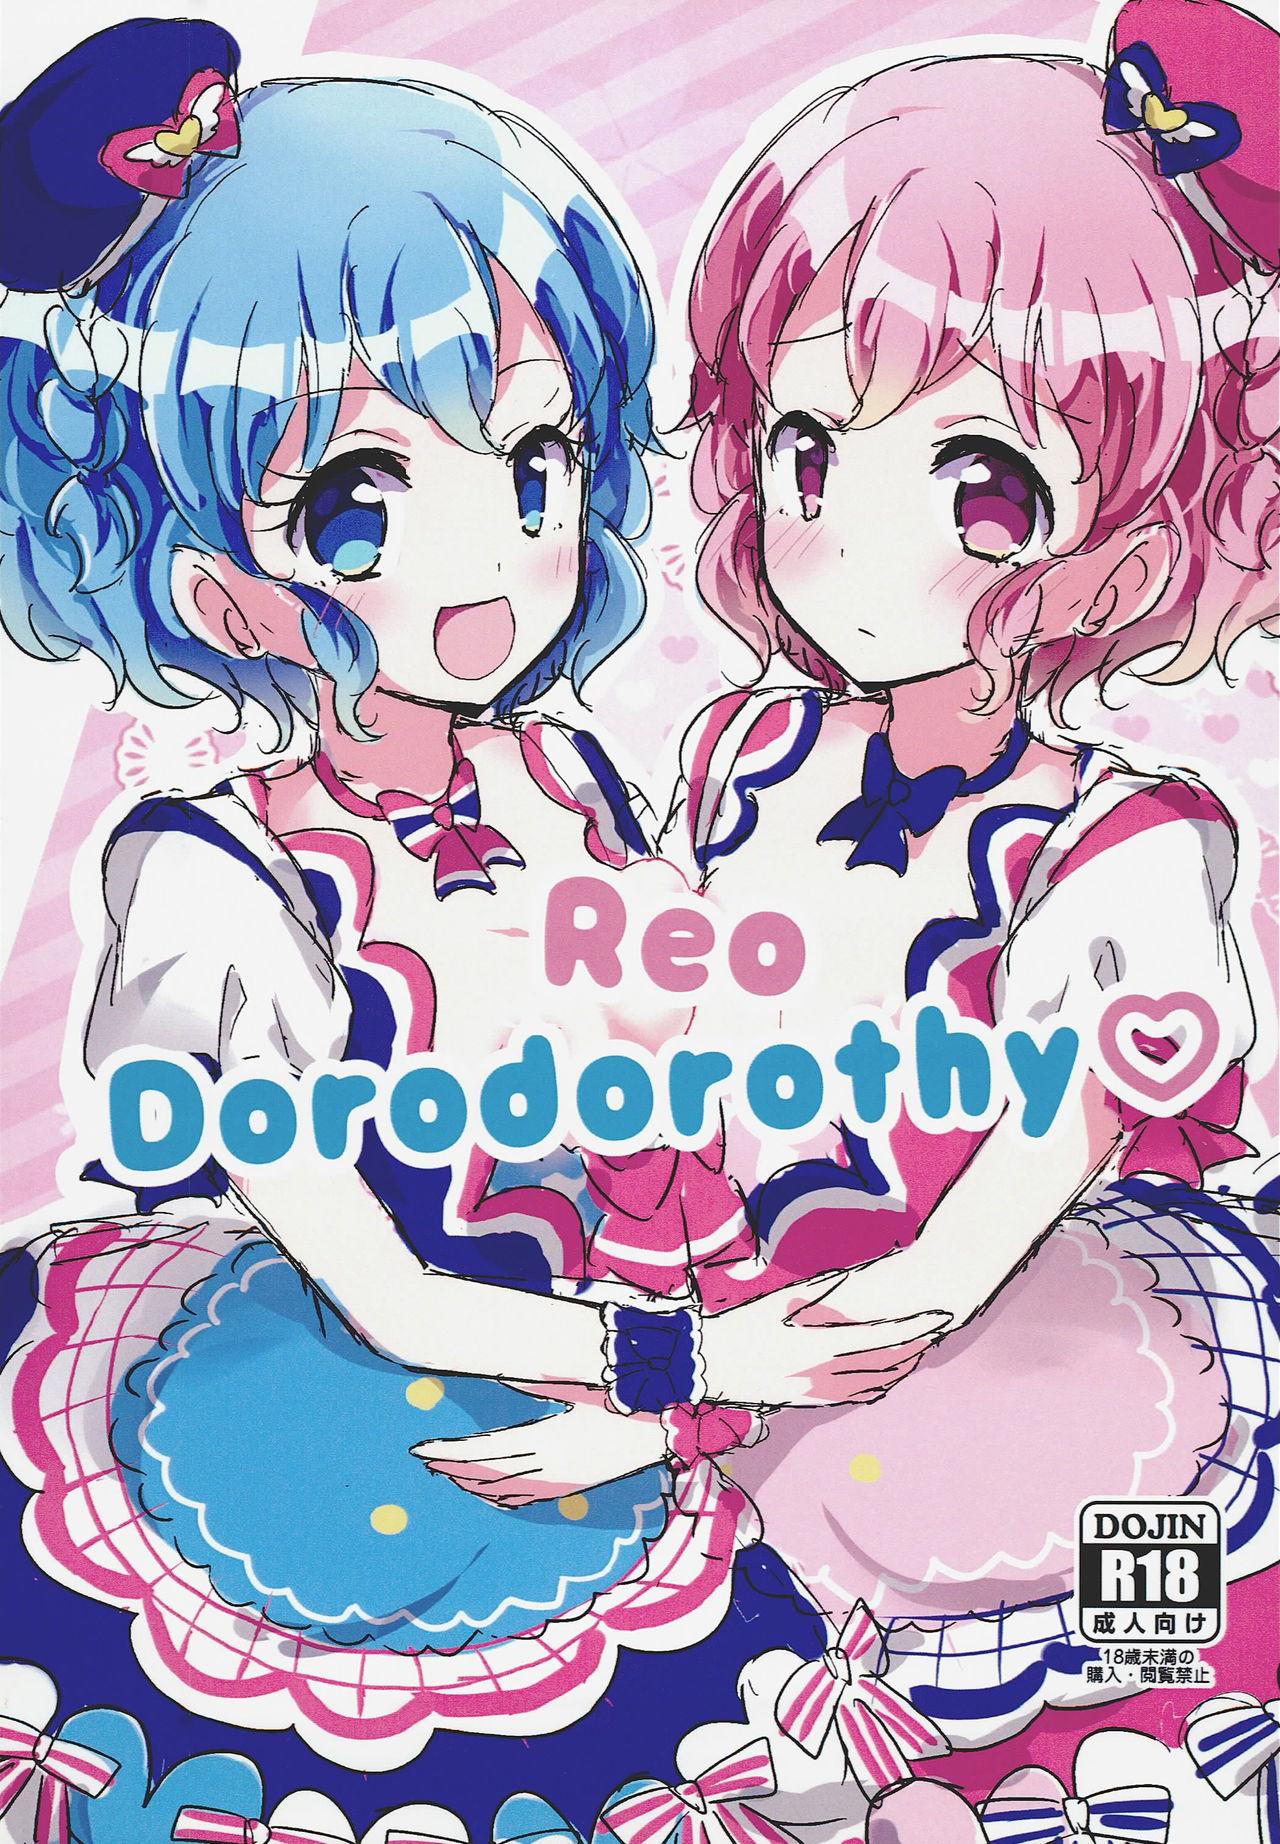 Reo Dorodorothy 0